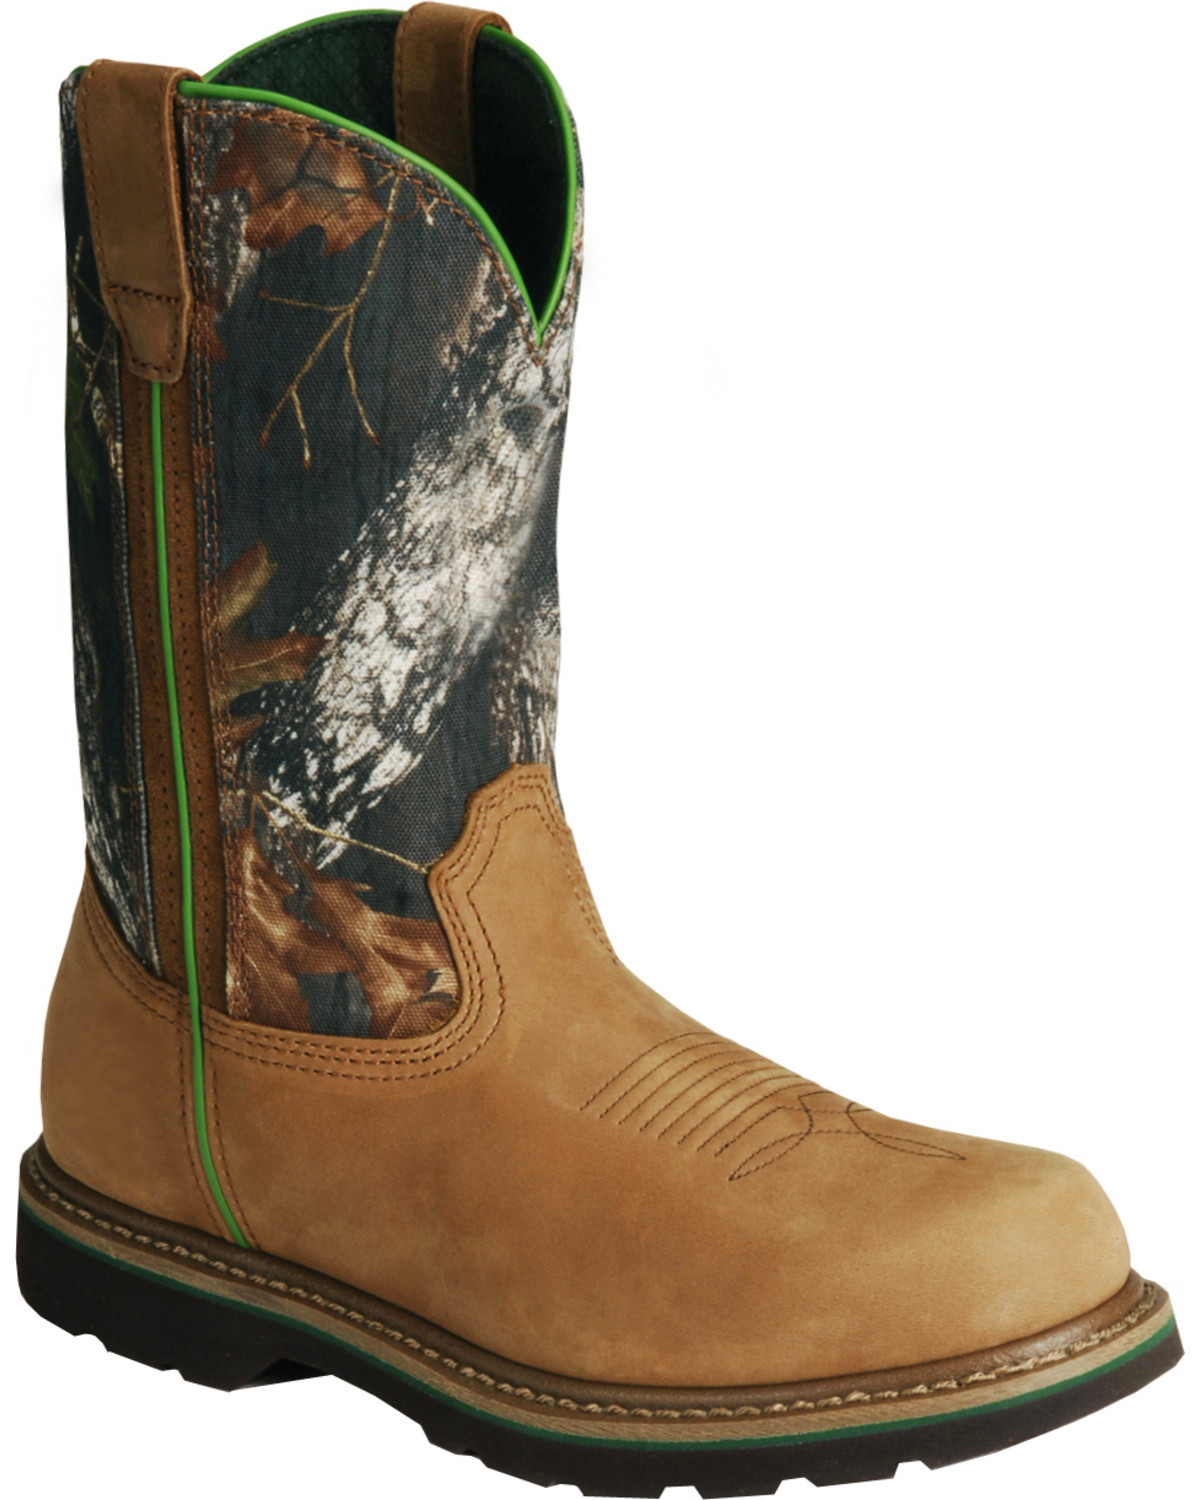 John Deere® Men's Mossy Oak Wellington Boots | Boot Barn